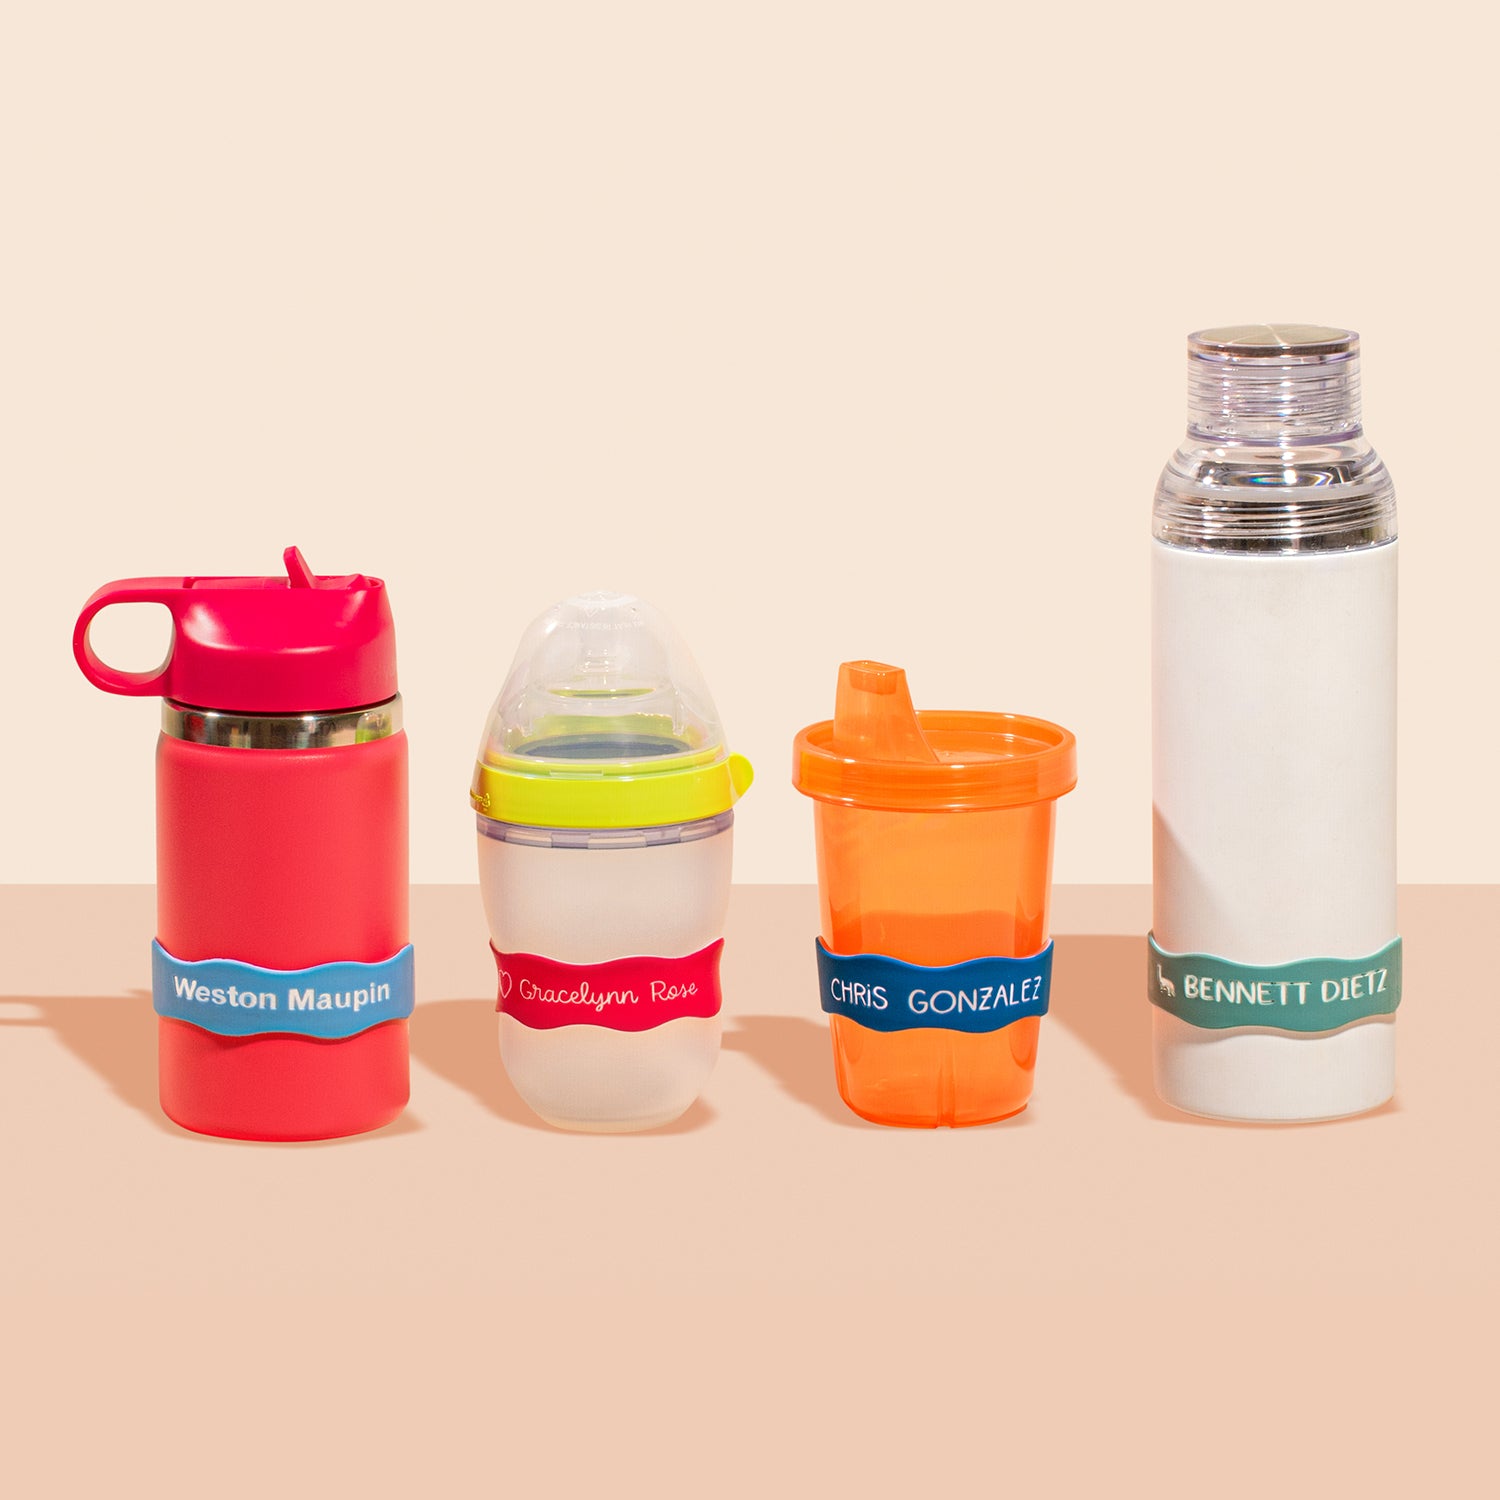 Back to School Kids Cups, School Water Bottles, Personalized Kids